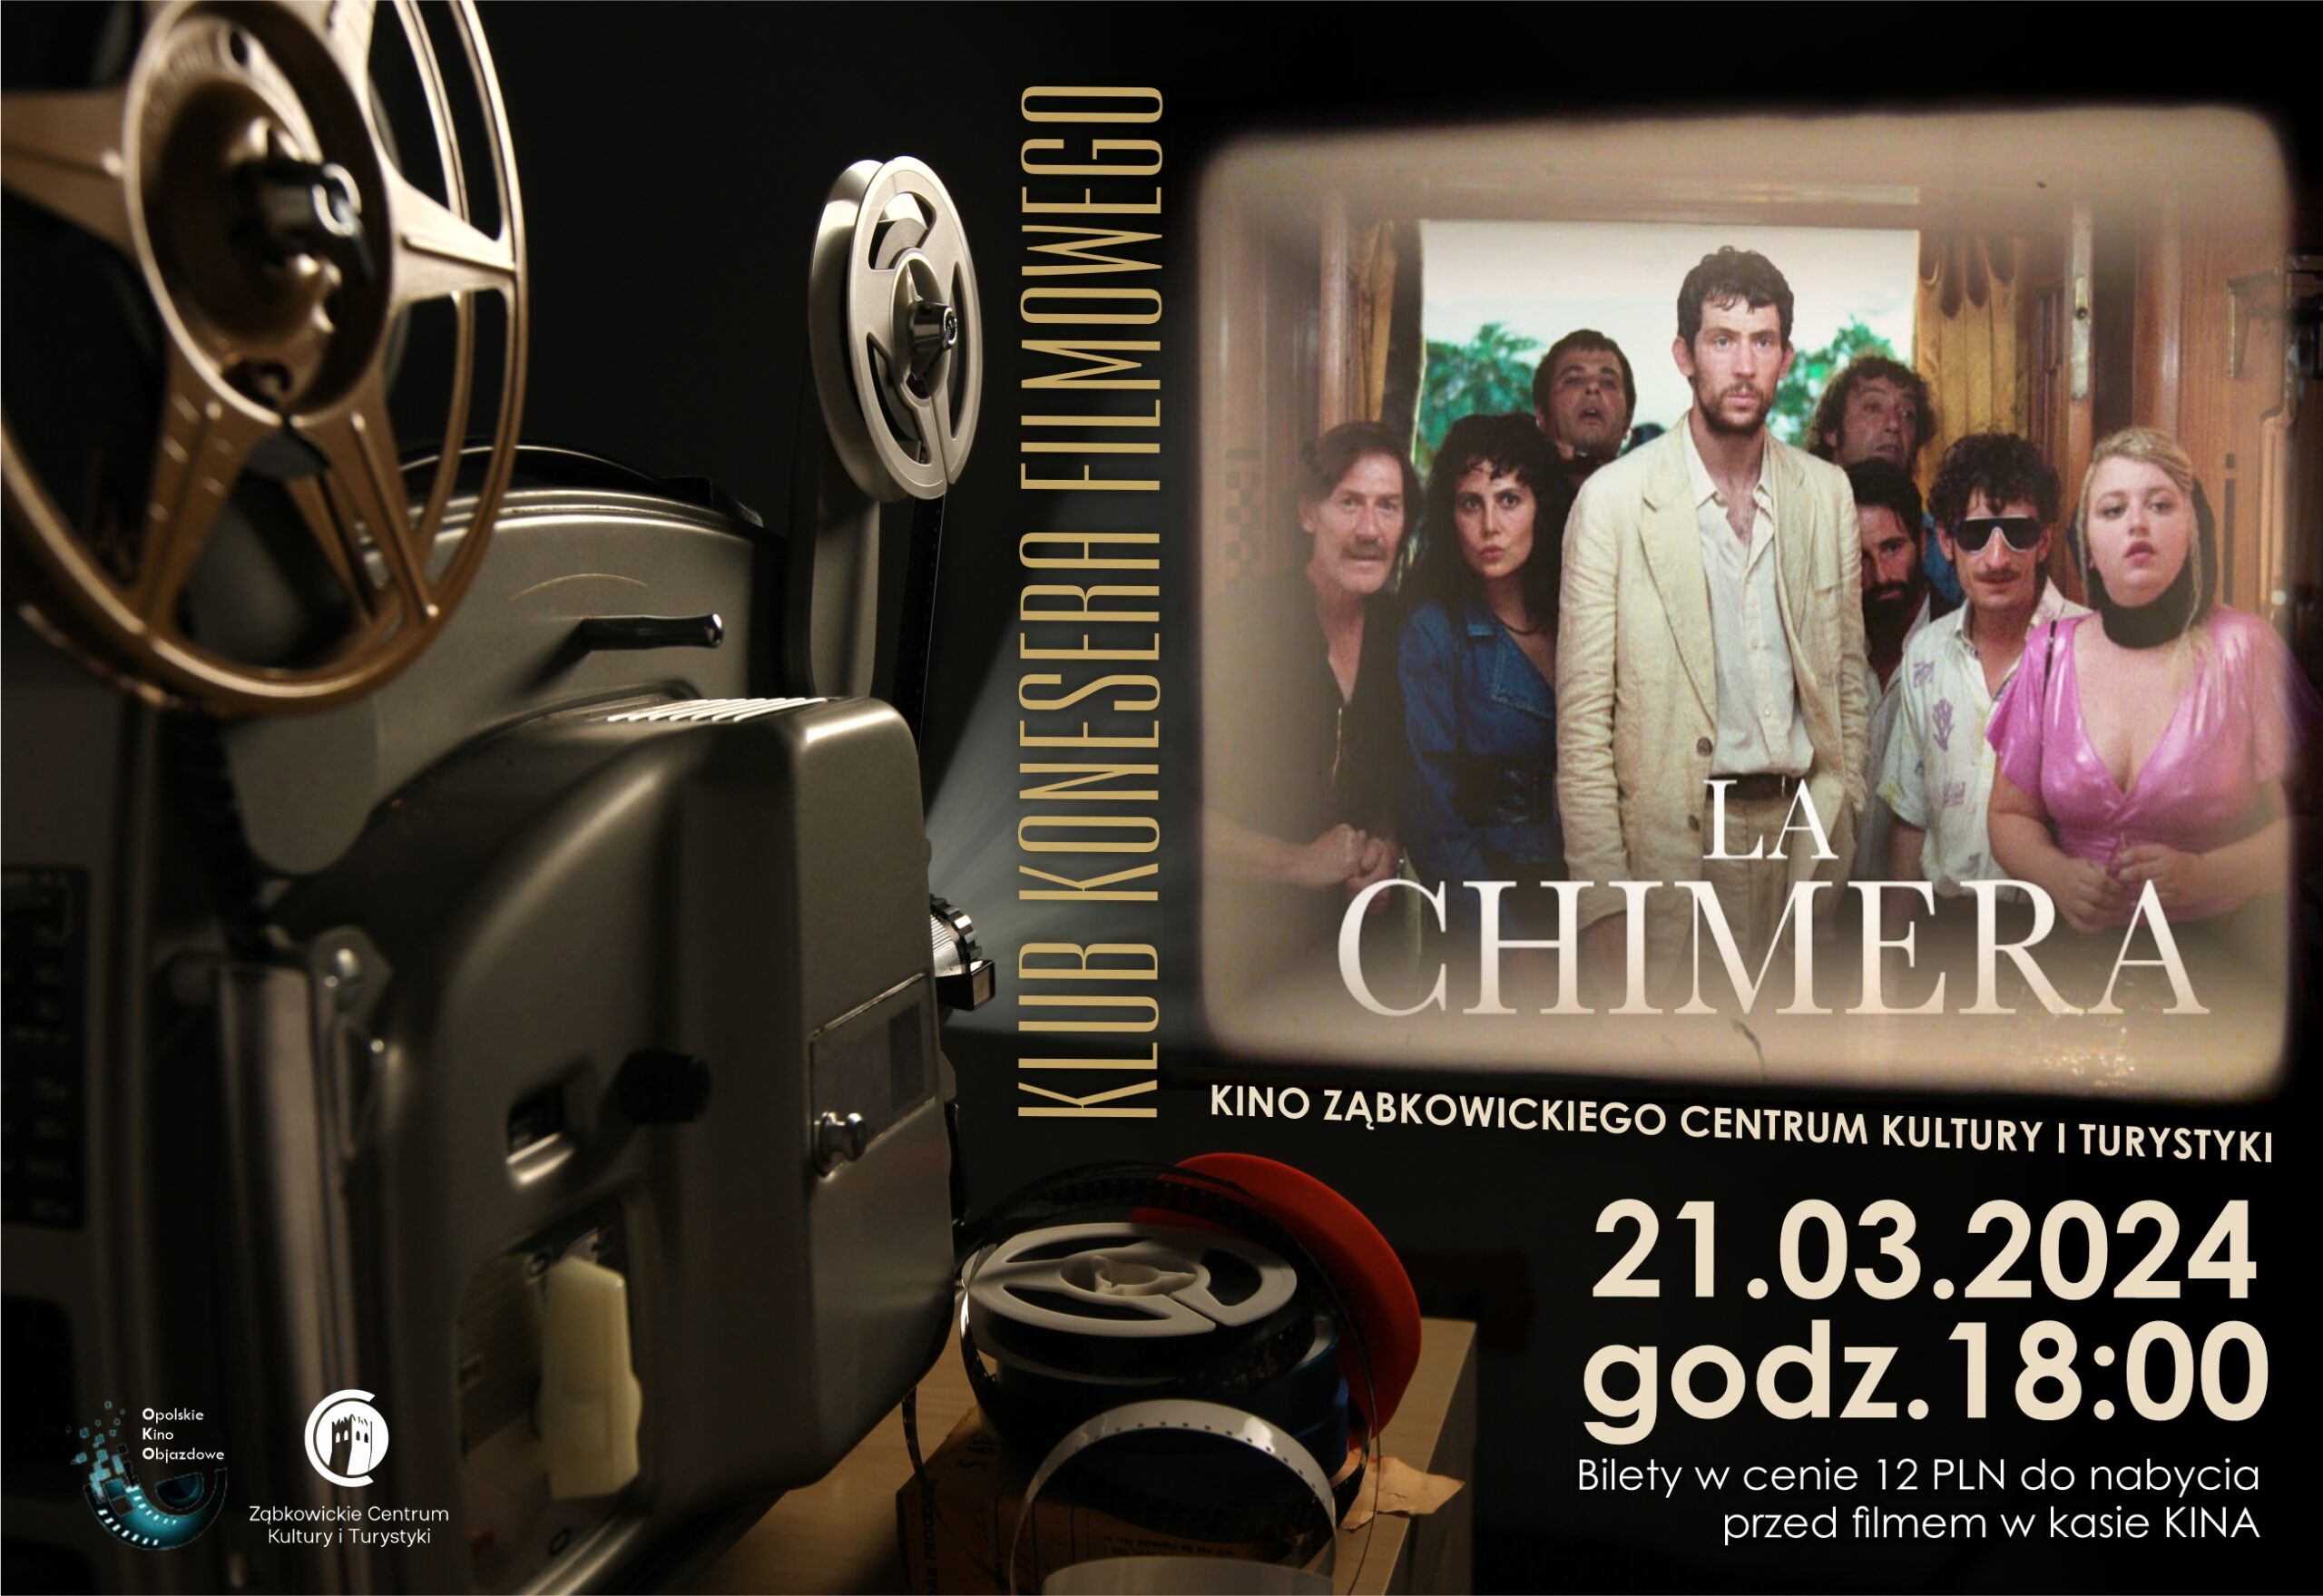 Plakat informujący o spektaklu filmu "La Chimera" w kinie Ząbkowickiego Centrum Kultury i Turystyki 21 marca 2024 o godzinie 18:00.